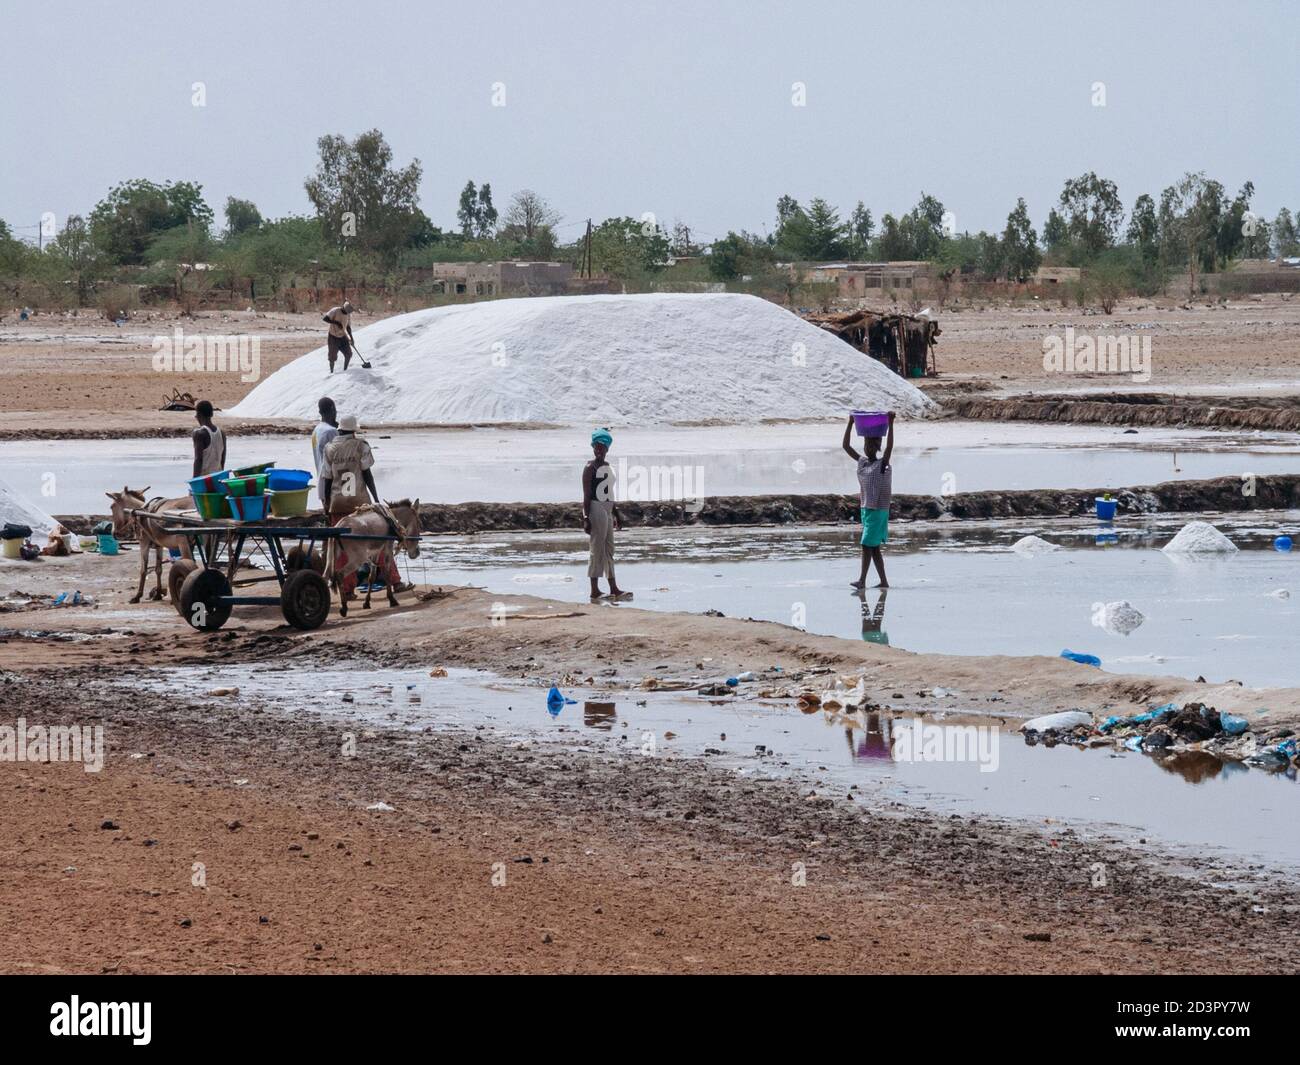 Une équipe de travailleurs récolte du sel dans les plaines de Fatick Sénégal Banque D'Images